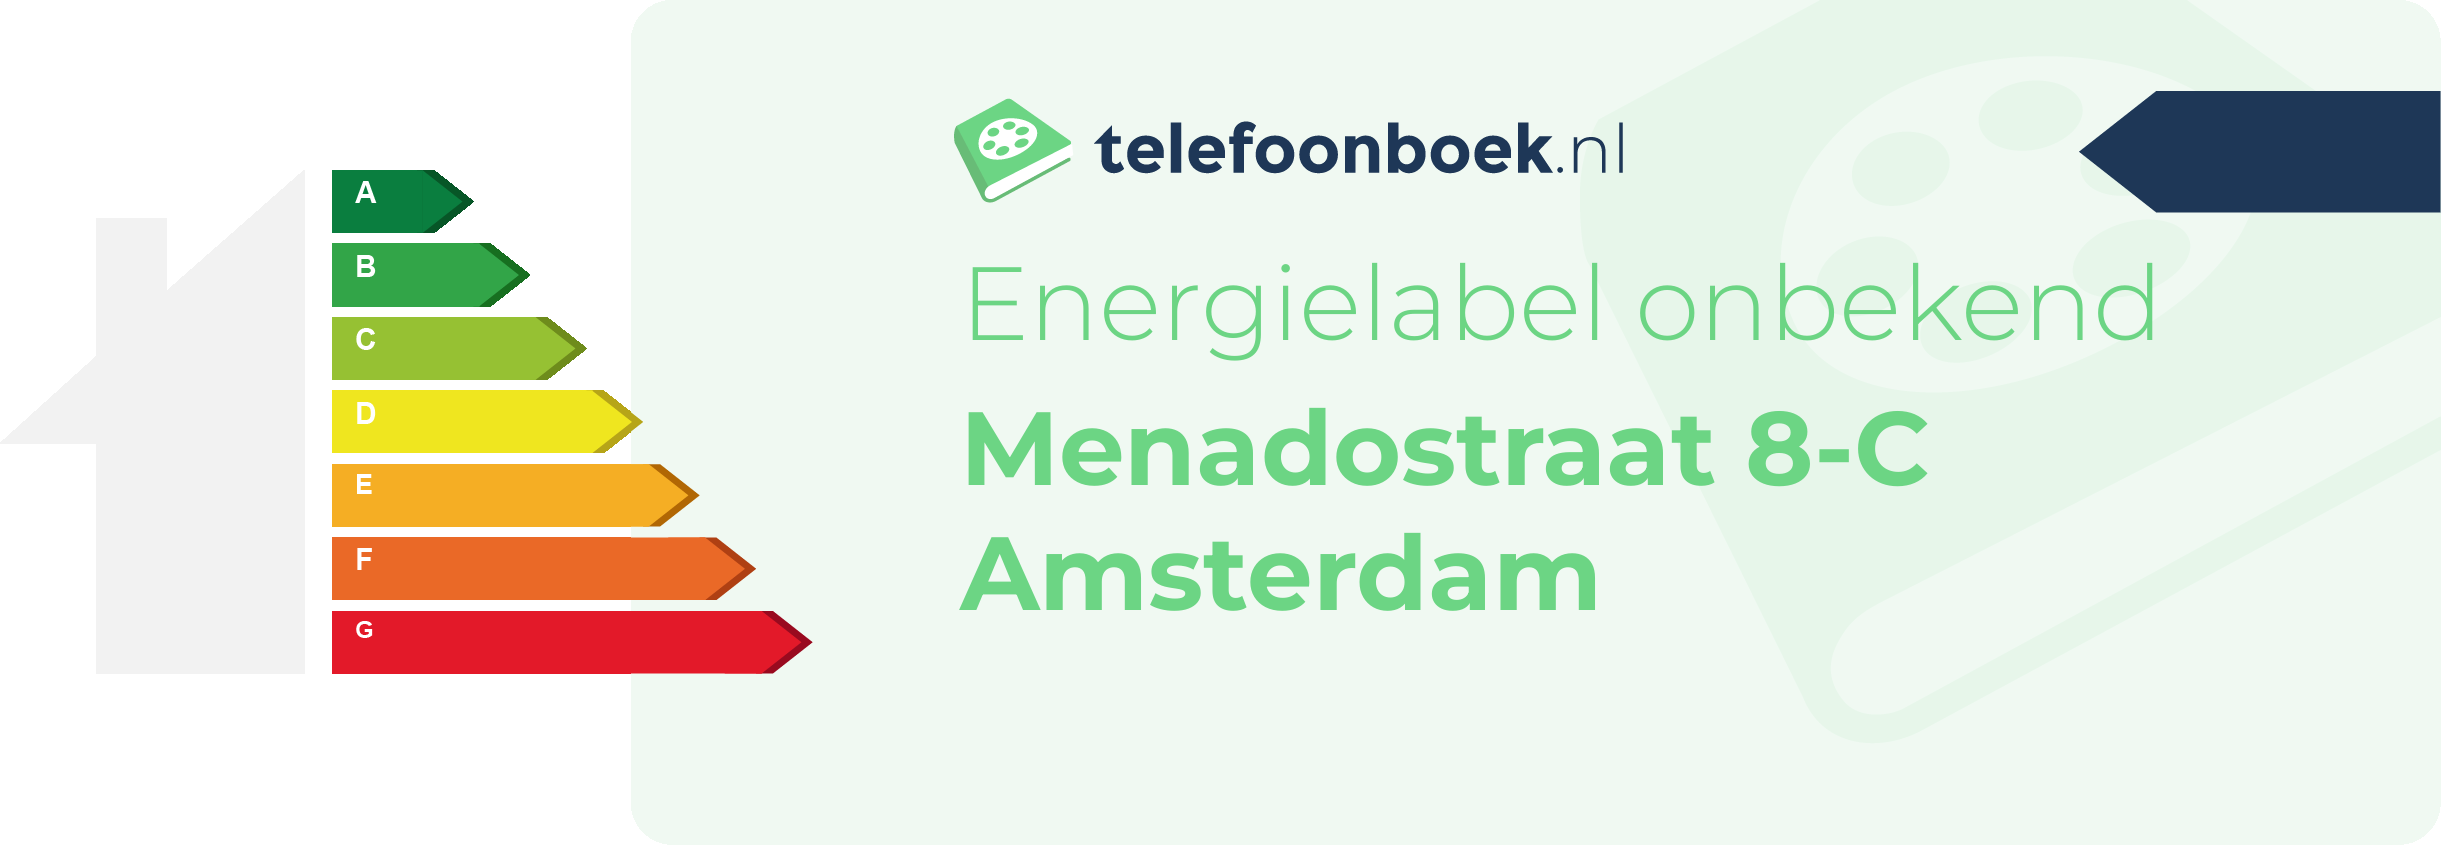 Energielabel Menadostraat 8-C Amsterdam